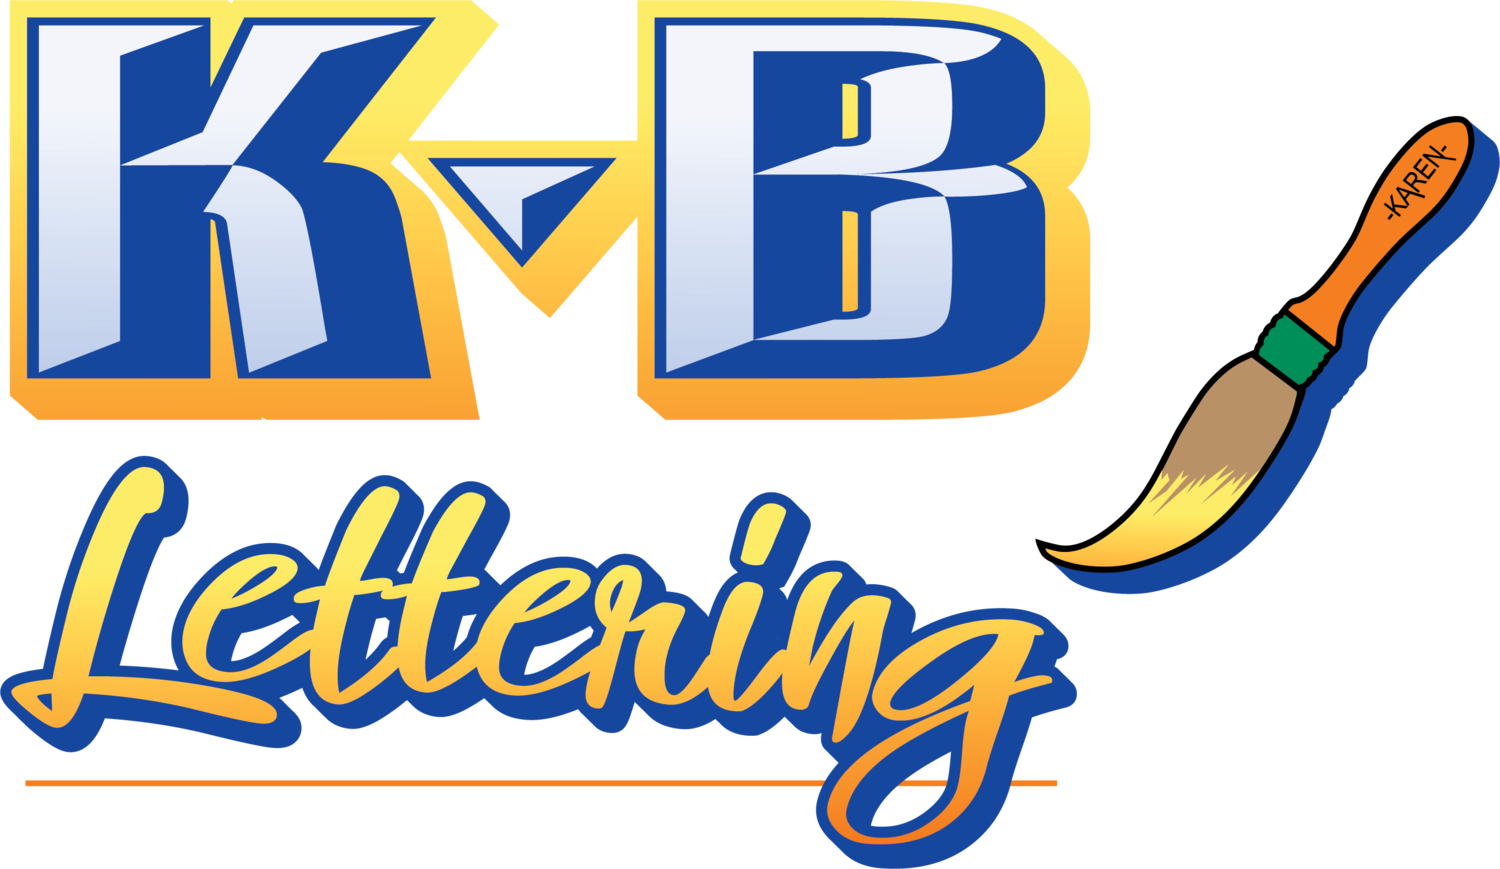 KB Lettering